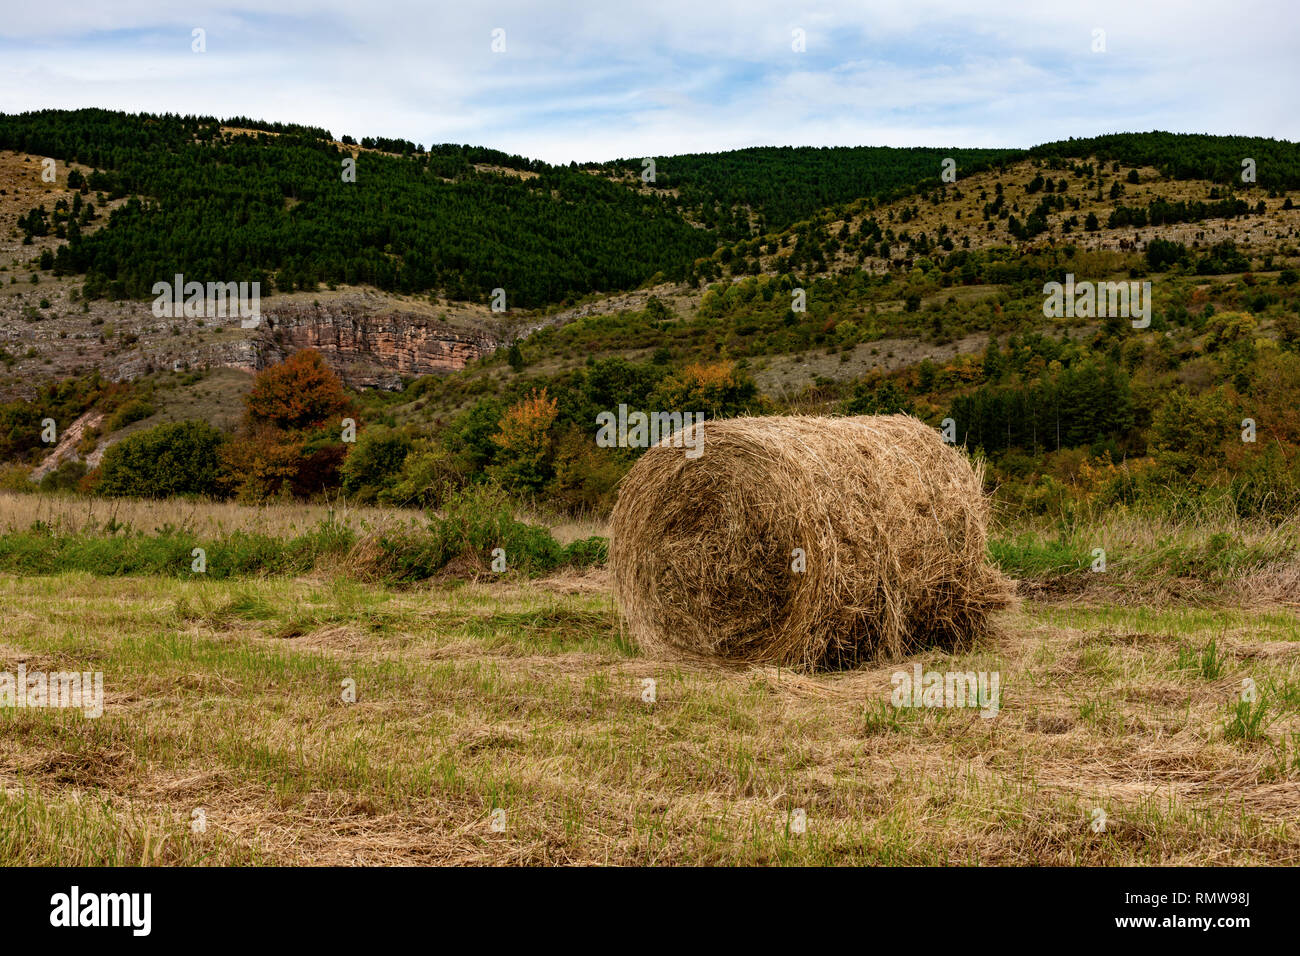 Hay. Landwirtschaft Feld mit mounatin und Sky. Ländliche Natur in der Farm Land. Stroh auf der Wiese. Weizen gelb Goldenen Ernte im Spätsommer Stockfoto